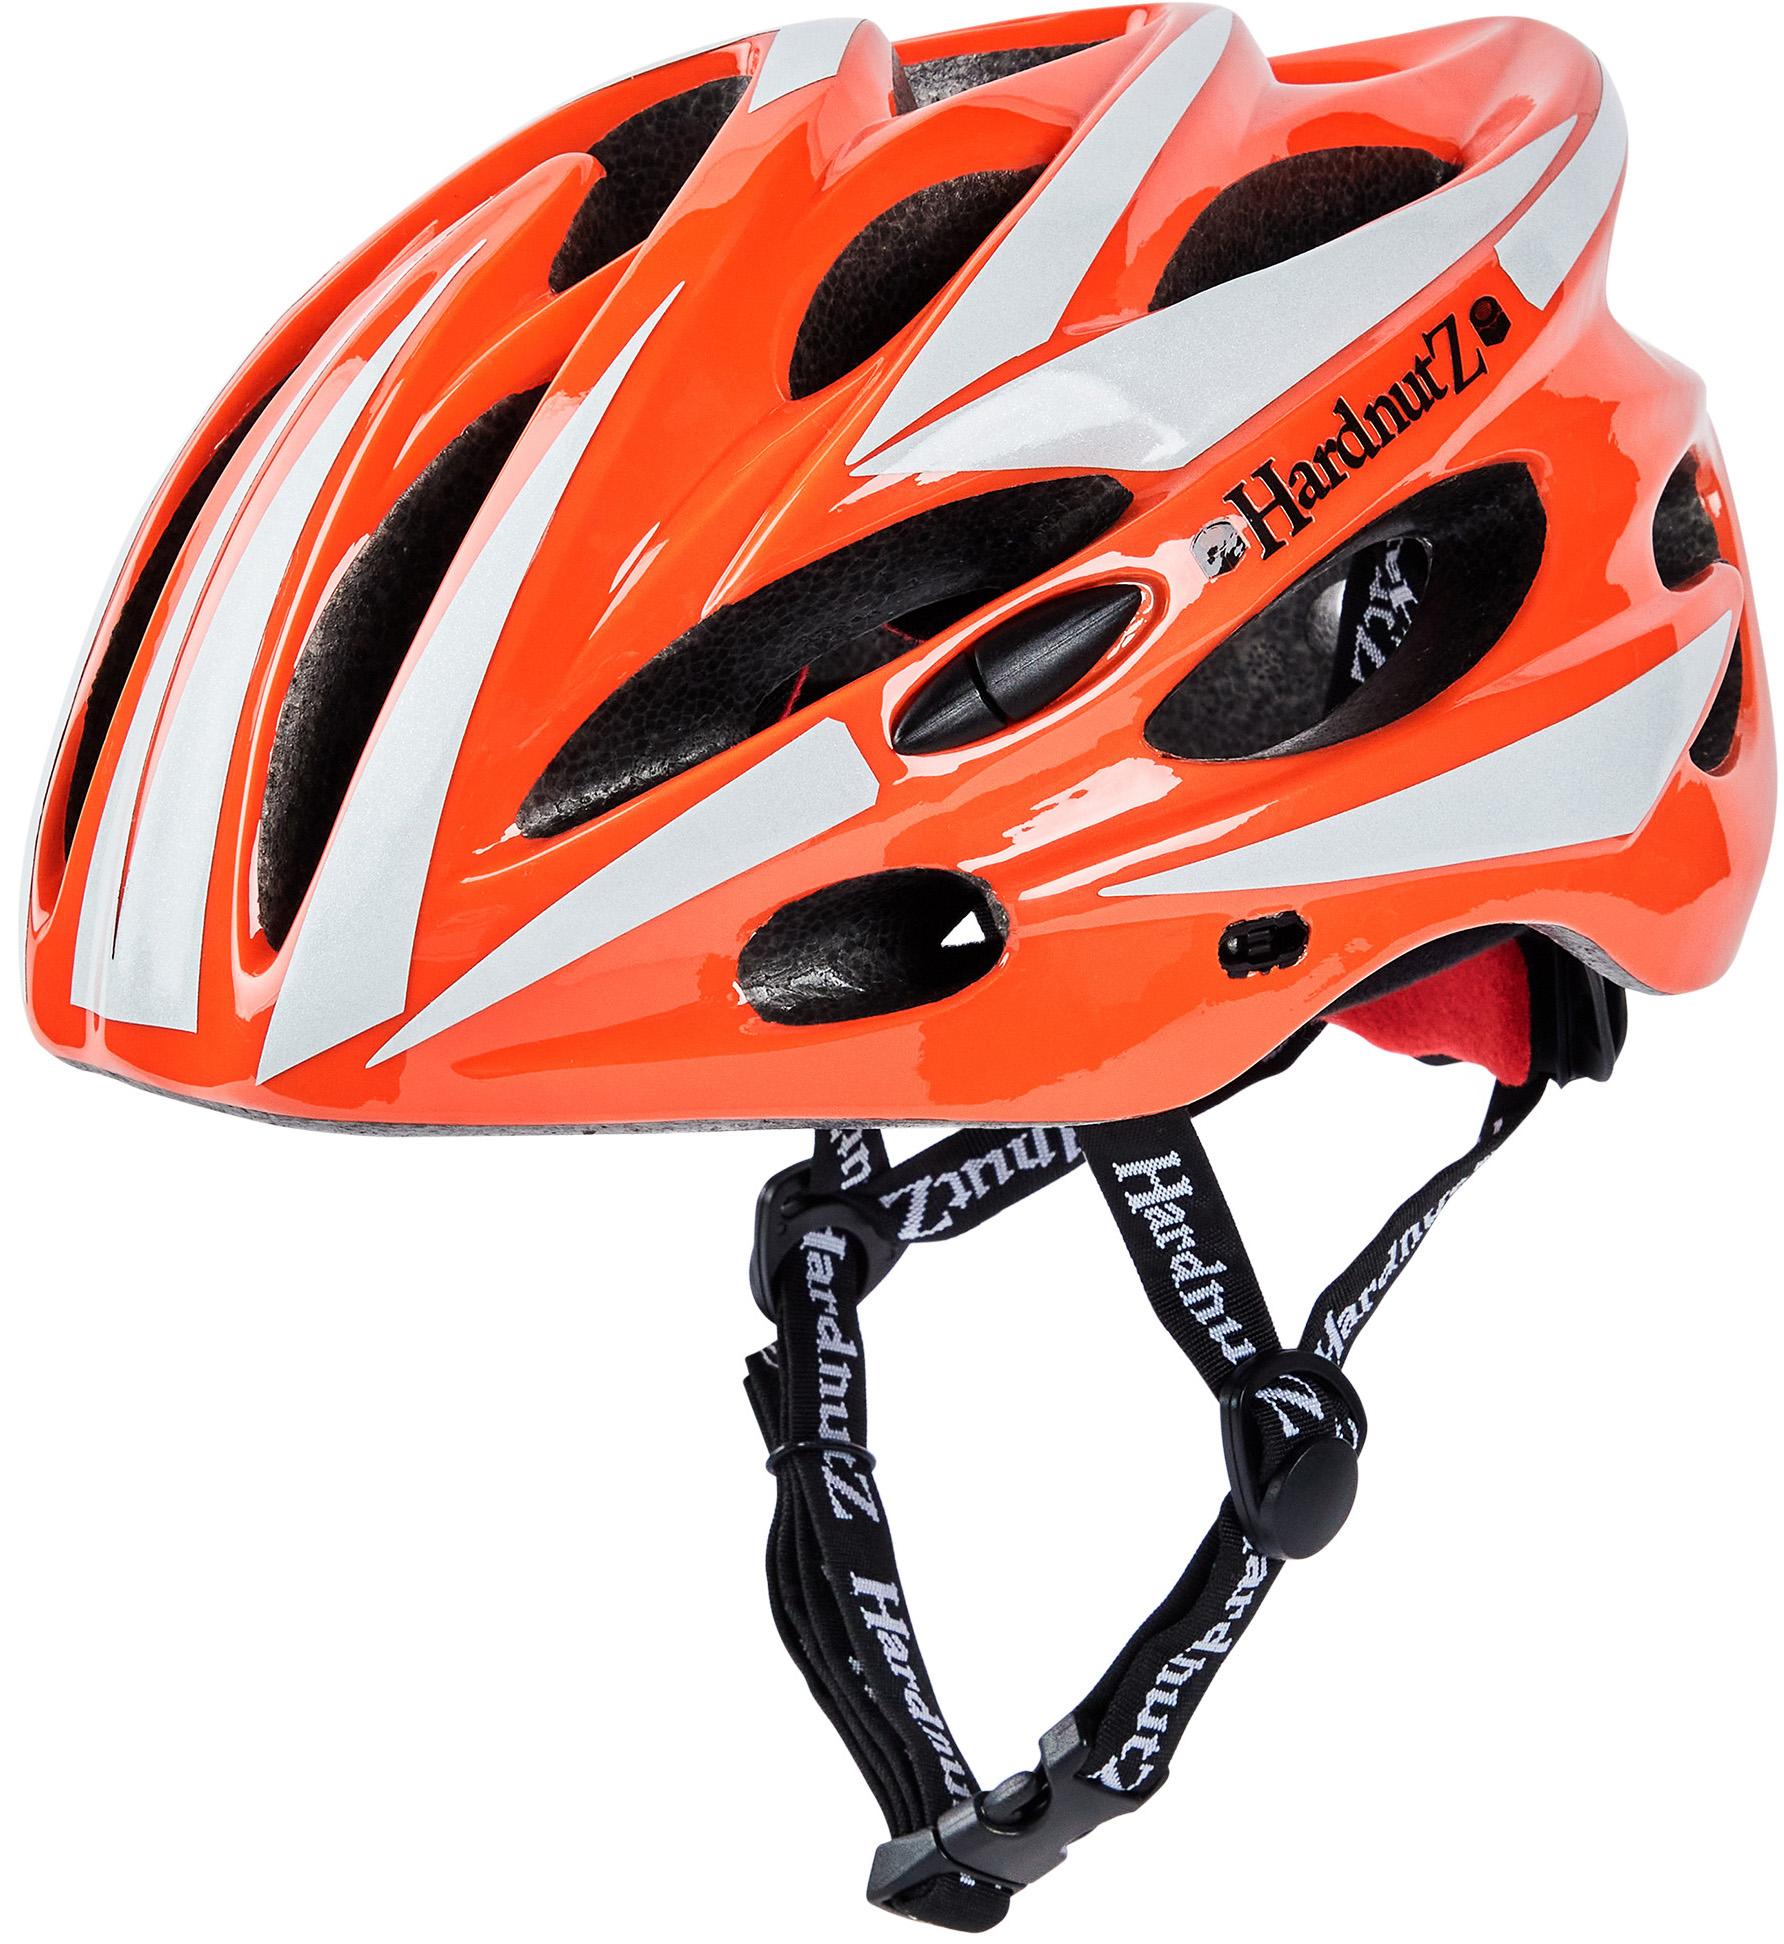 Hardnutz Hi Vis Orange Road Bike Helmet - 54-62Cm